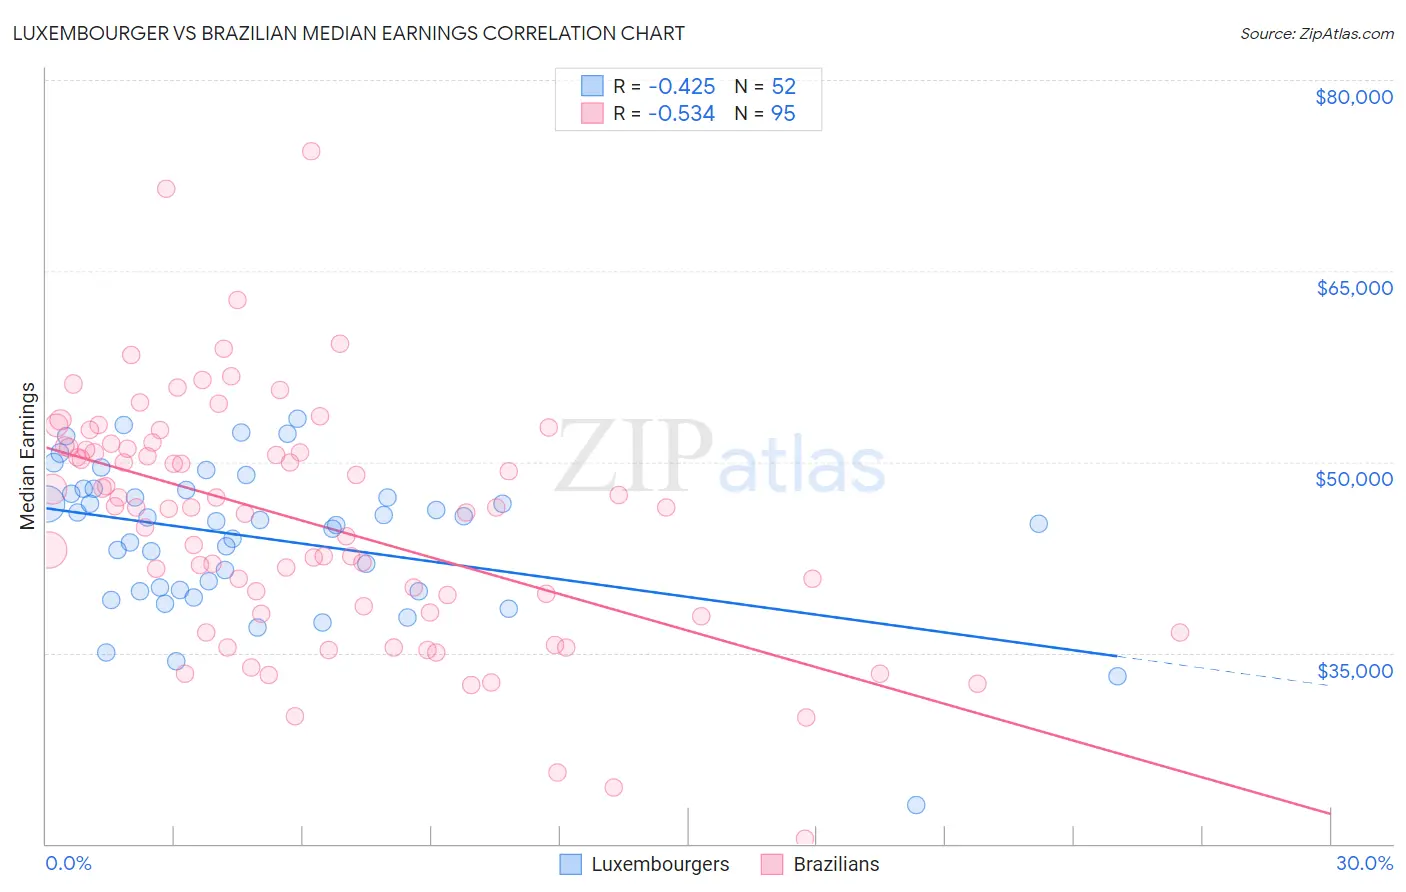 Luxembourger vs Brazilian Median Earnings